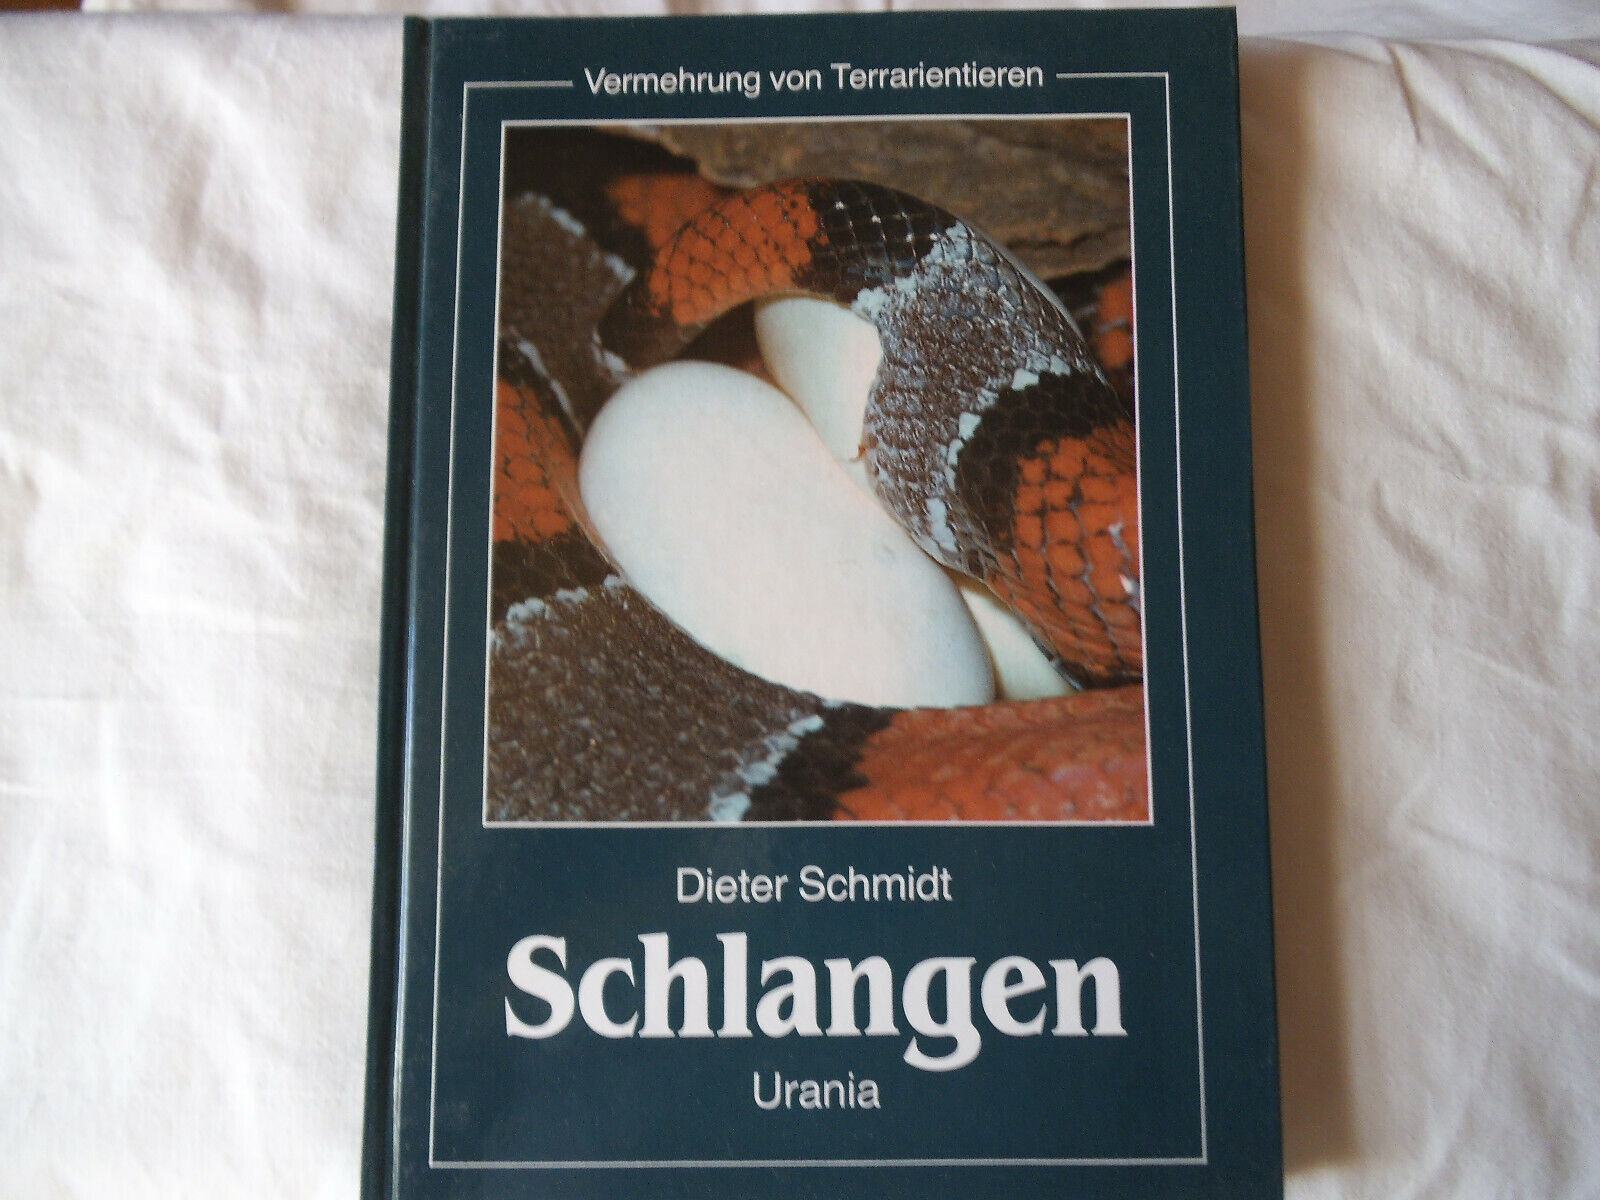 Dieter Schmidt: Schlangen. Vermehrung von Terrarientieren - Dieter Schmidt